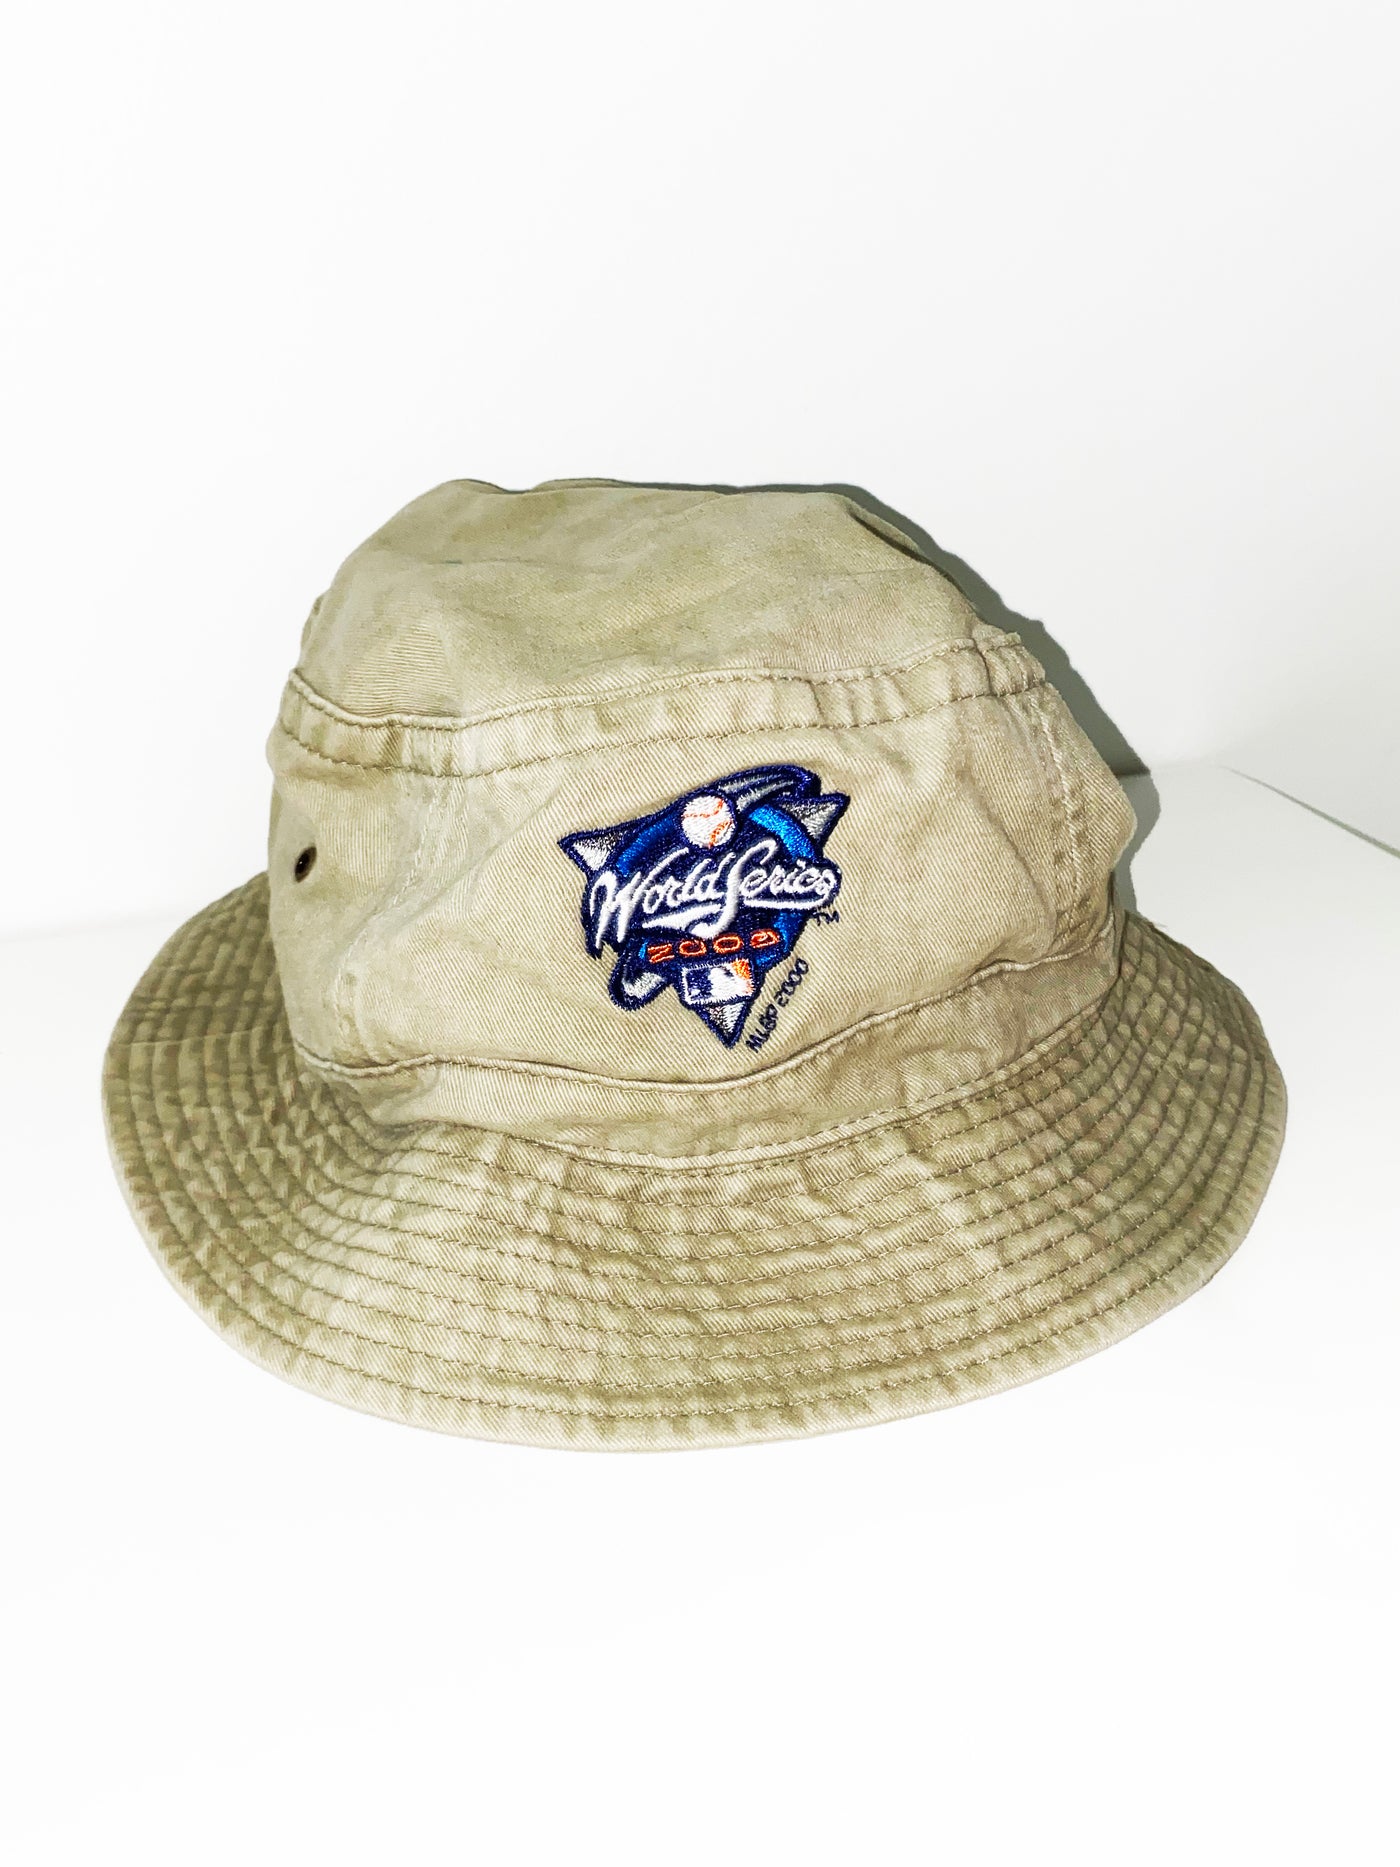 Vintage 2000 Subway Series Bucket Hat (Yankees vs. Mets)